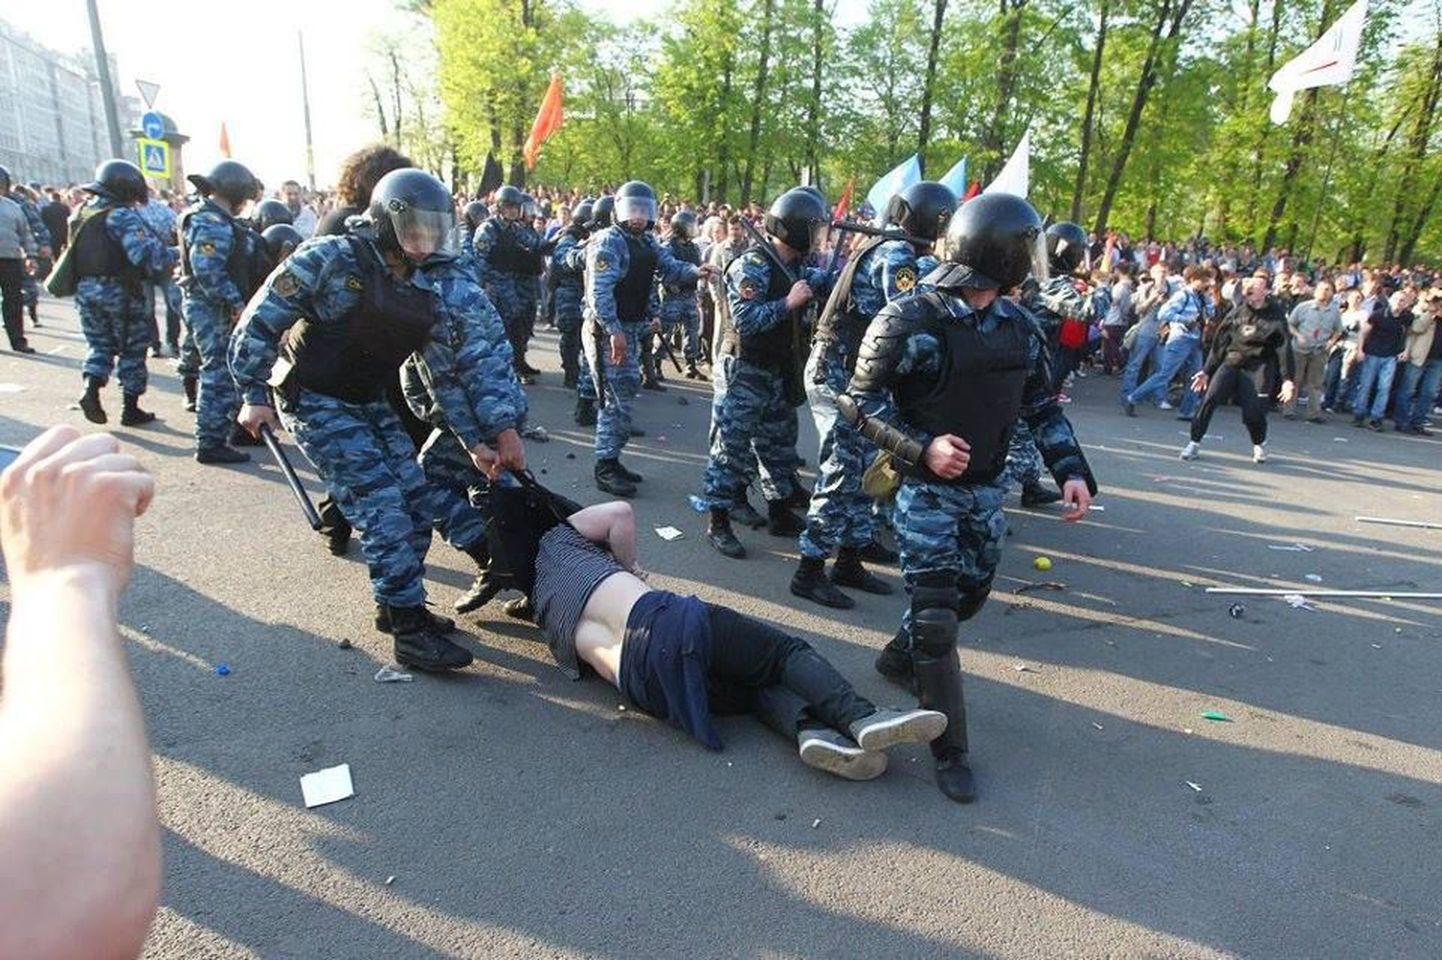 Жесткое задержание Андрея Федотова на Болотной площади попало в объектив камеры журналистов "Новой газеты".